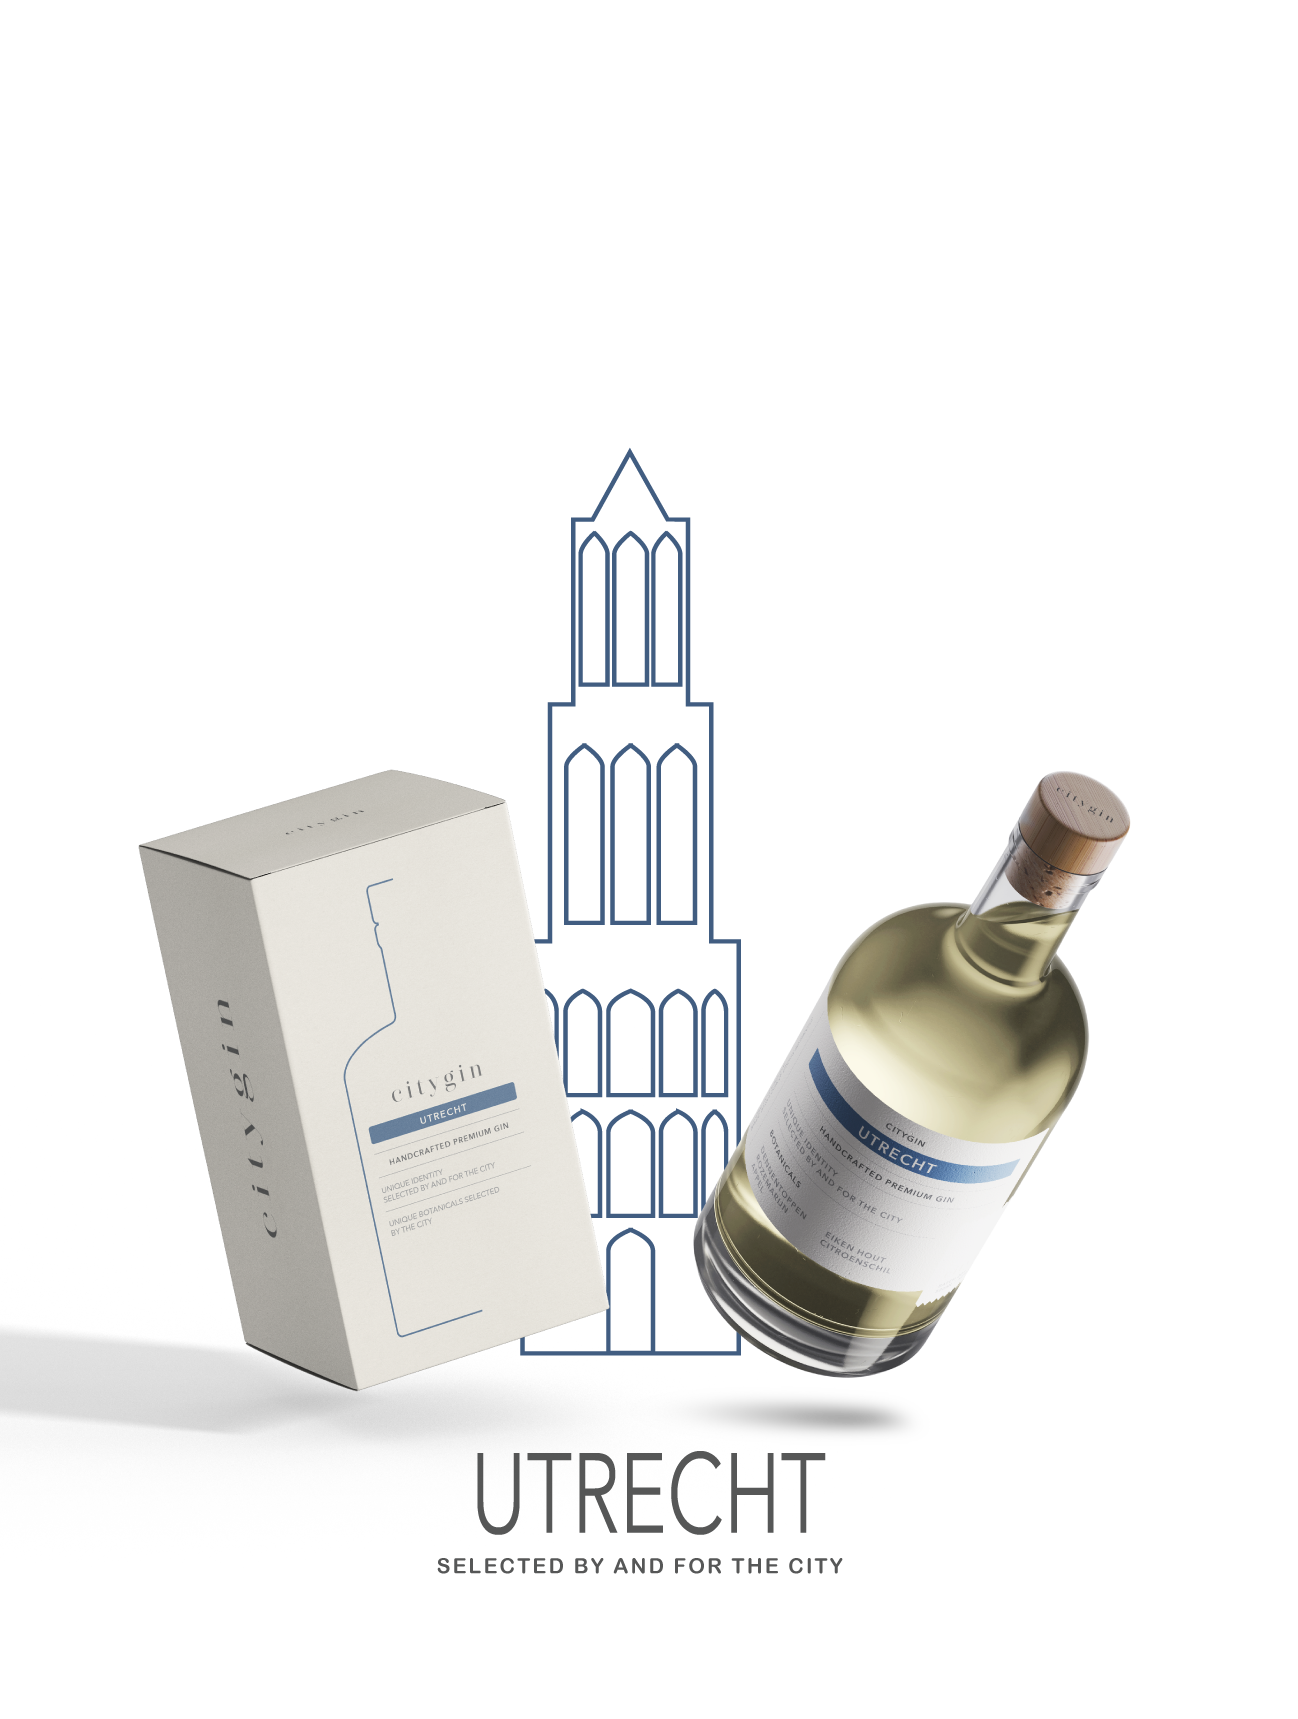 Utrecht gin